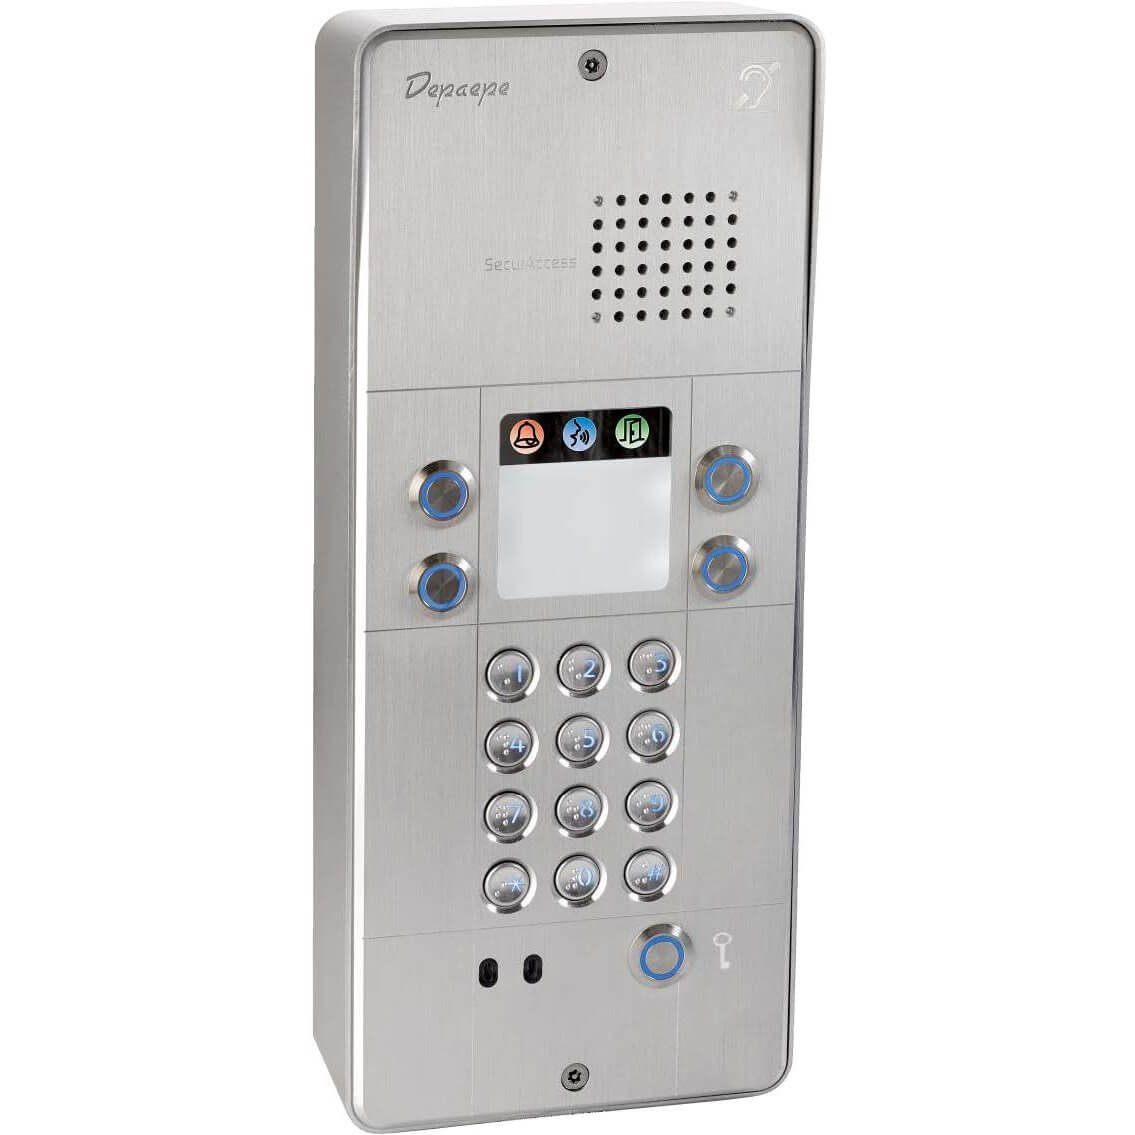   Portiers Audio   Securaccess PMR IP CAM 4BT ALU PX404A